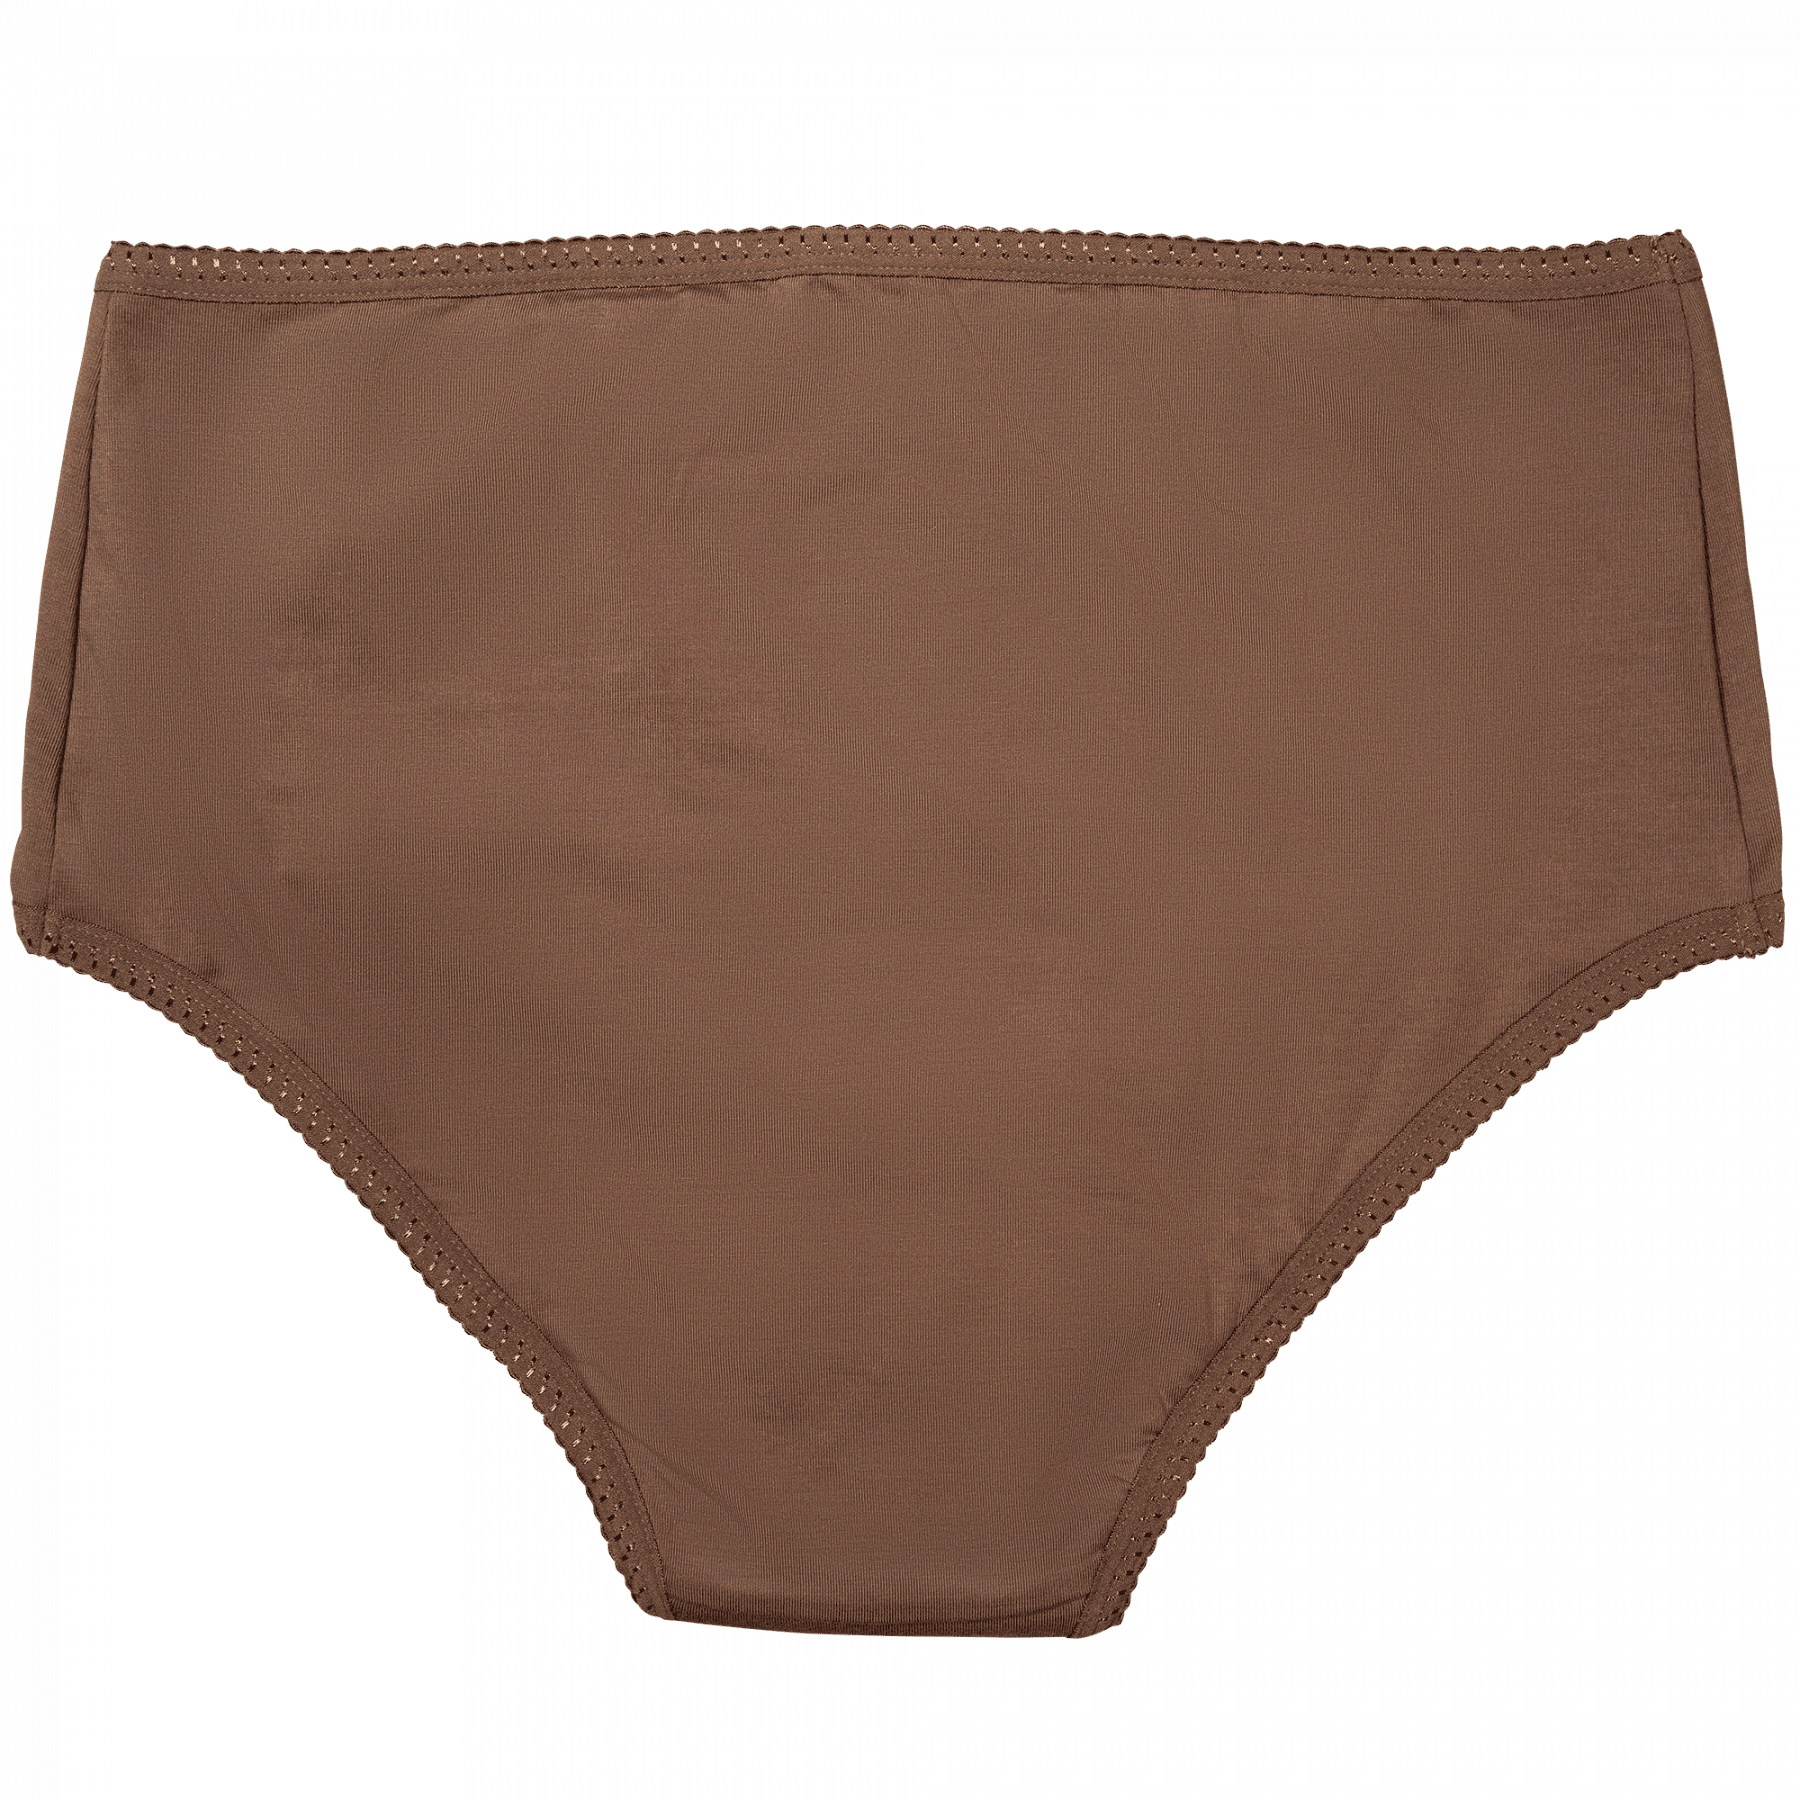 Period Underwear - Heavy Flow Cedar - back